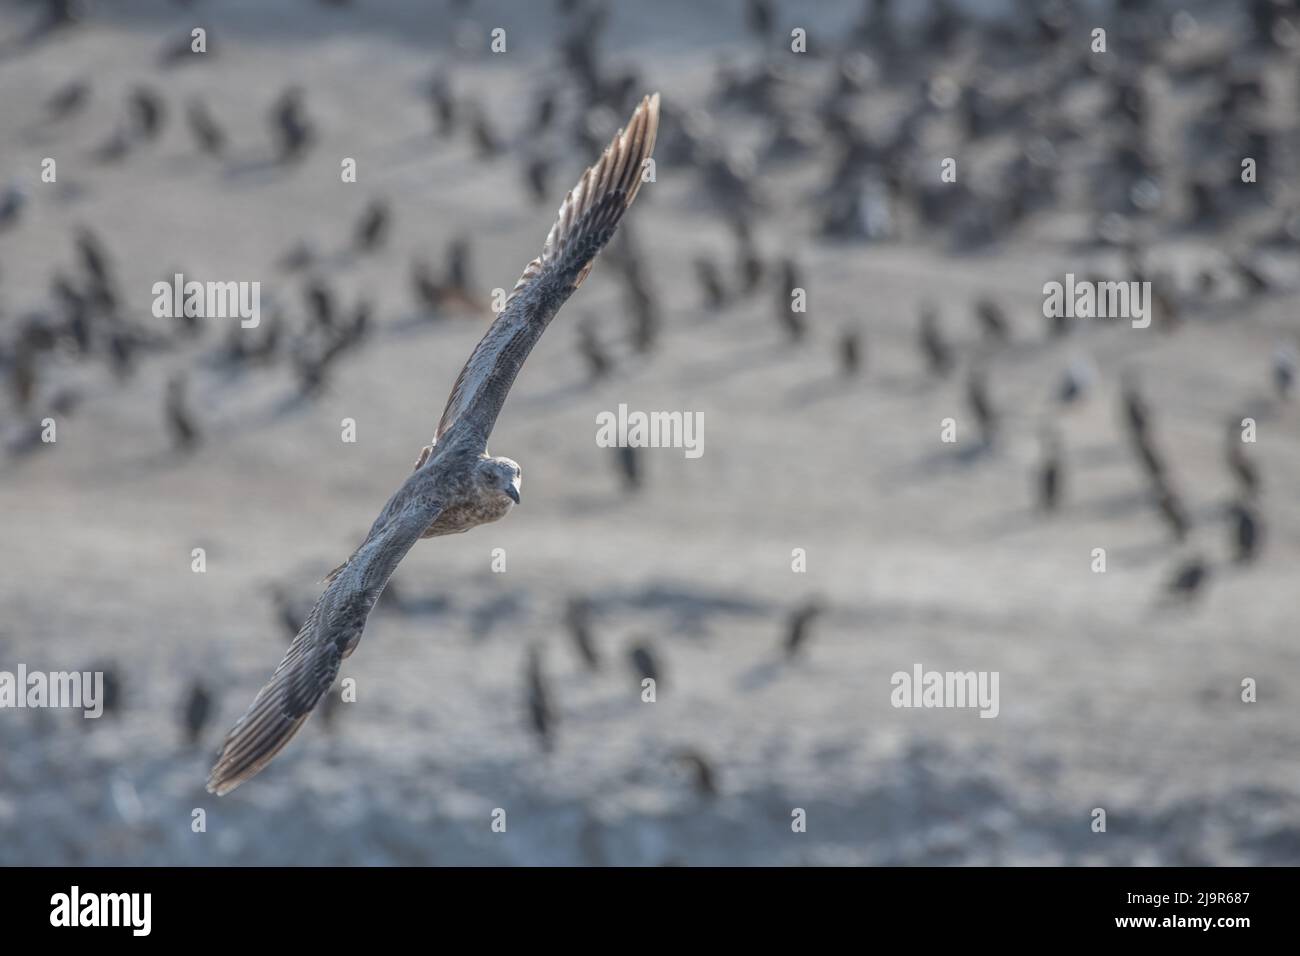 Un goéland occidental volant (Larus occidentalis) son plumage brun indique qu'il est juvénile. Dans la réserve naturelle d'État de point lobos, Californie. Banque D'Images